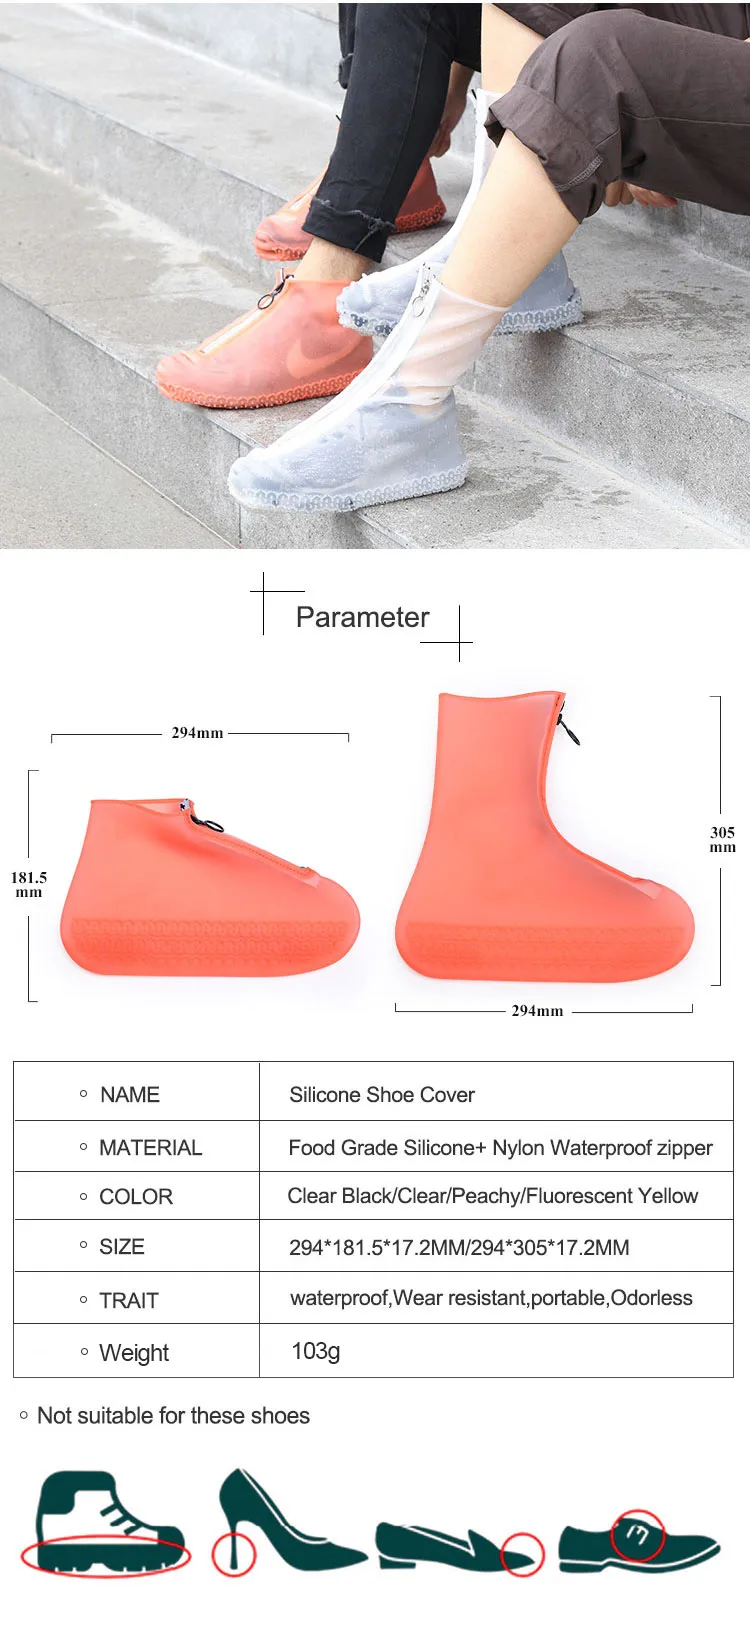 Sapato de borracha de silicone látex de segurança cobre galochas com zíper para dias chuvosos